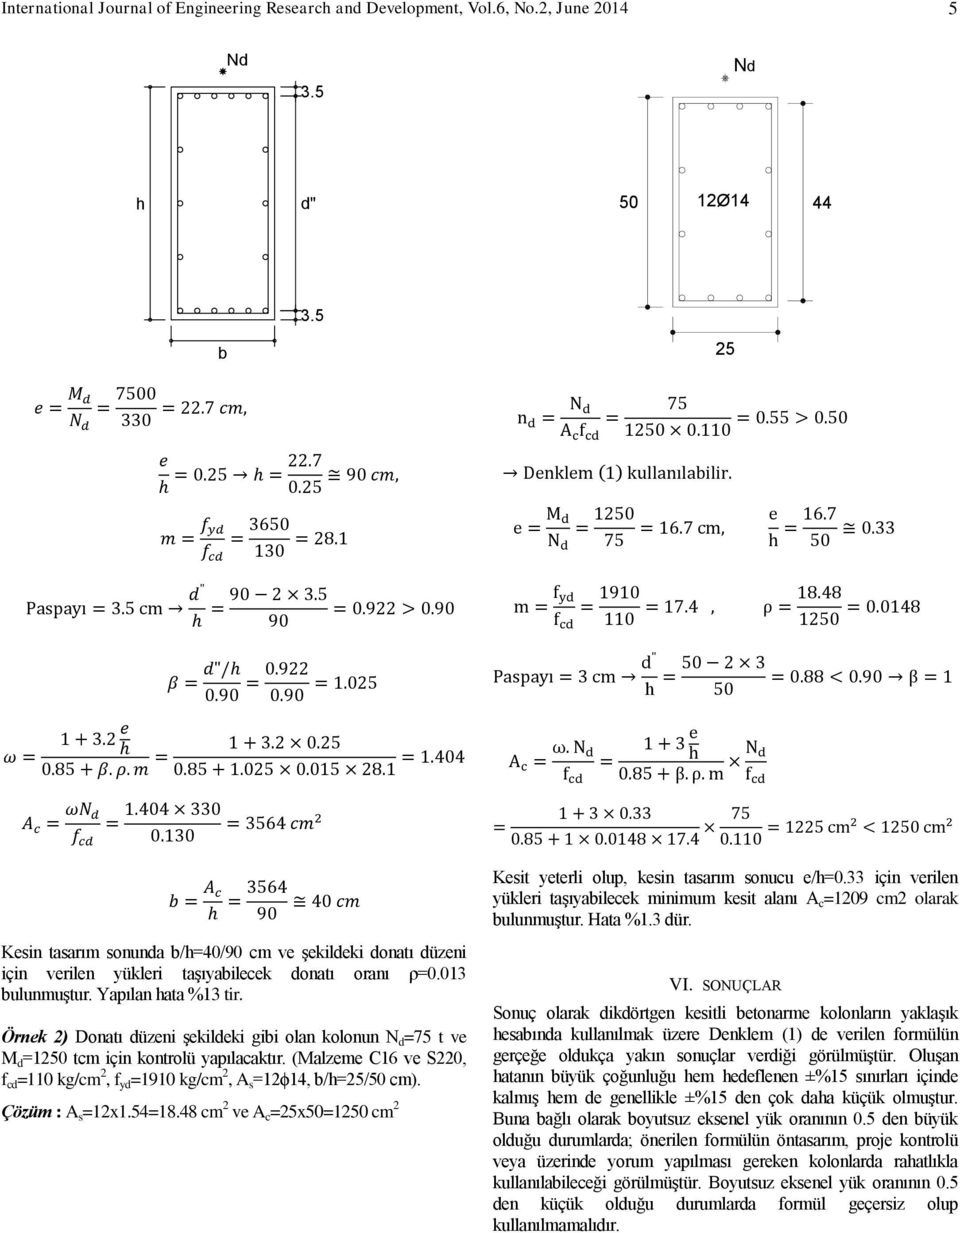 Örnek 2) Donatı düzeni şekildeki gibi olan kolonun N d =75 t ve M d =1250 tcm için kontrolü yapılacaktır. (Malzeme C16 ve S220, f cd =110 kg/cm 2, f yd =1910 kg/cm 2, A s =12ϕ14, b/h=25/50 cm).